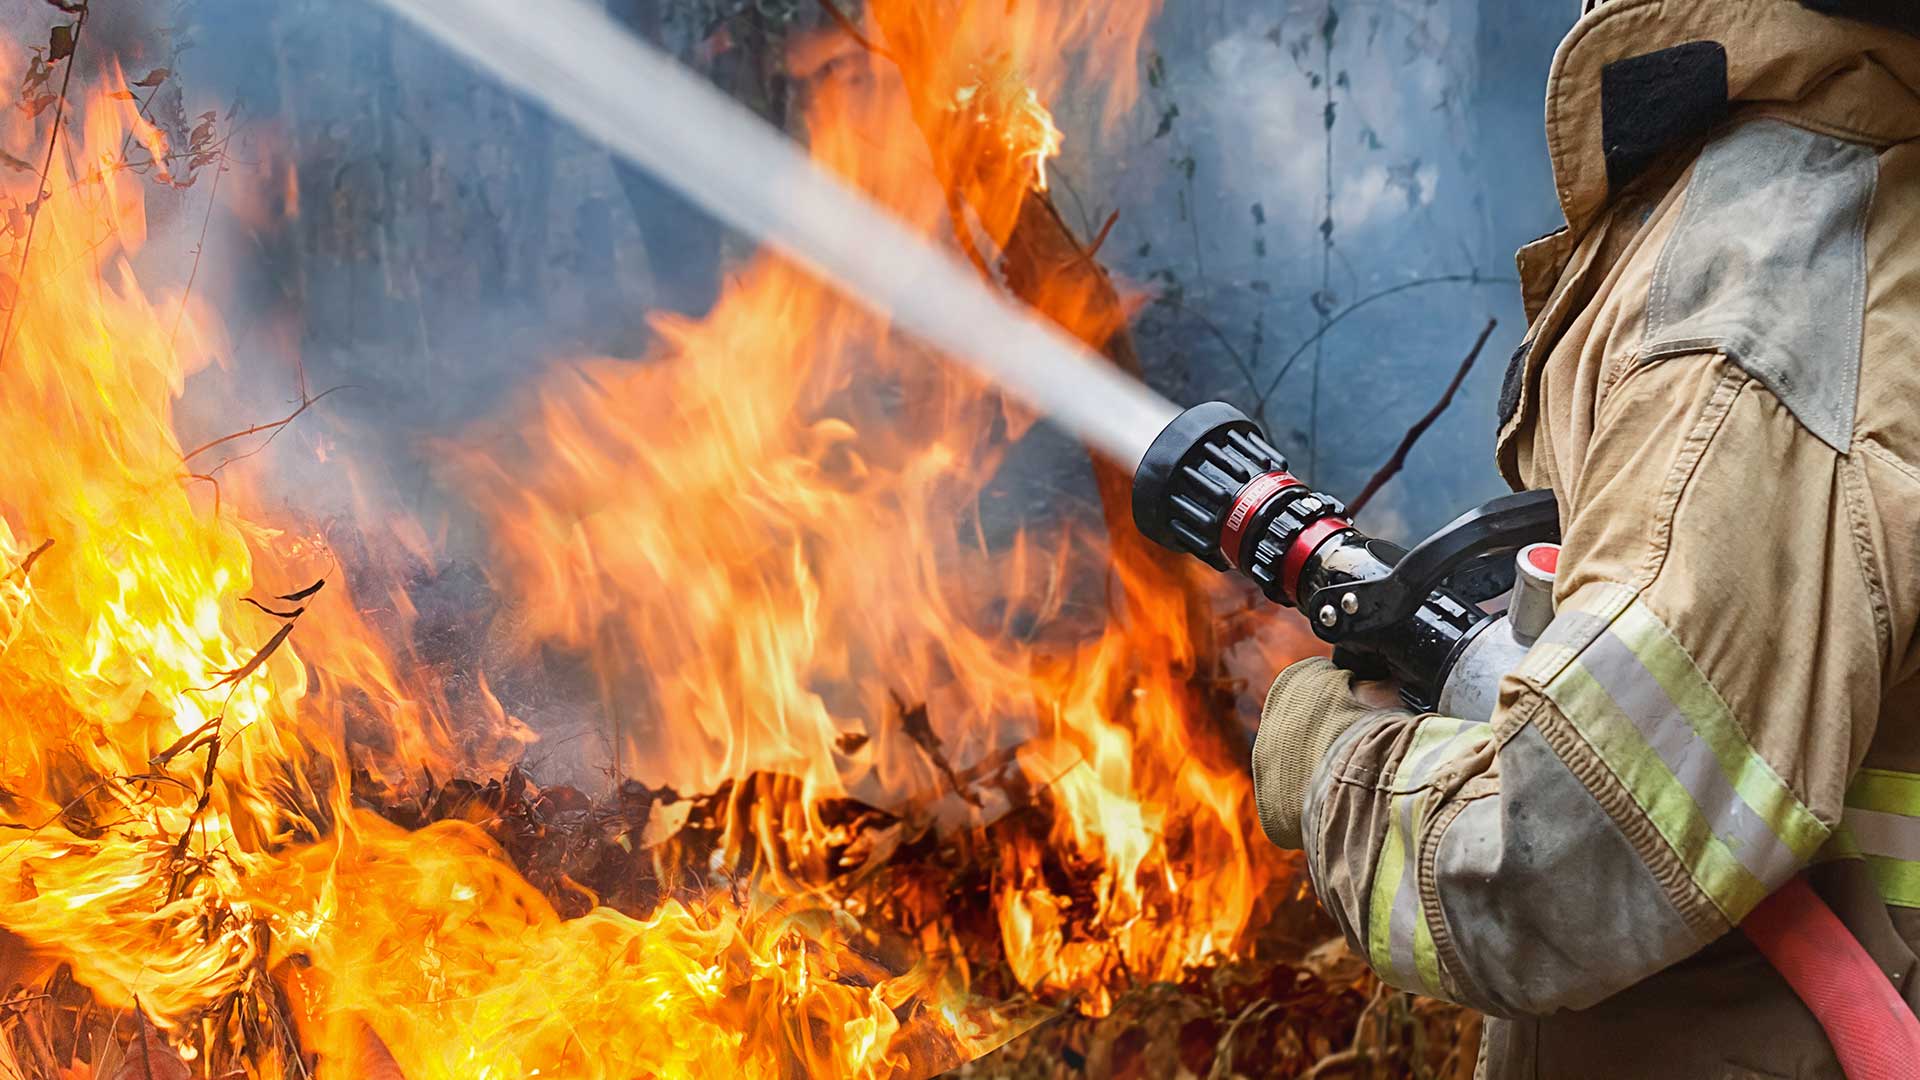 Հրդեհ՝ Սարդարապատ գյուղում. կանխվել է կրակի տարածումը դեպի տնակ